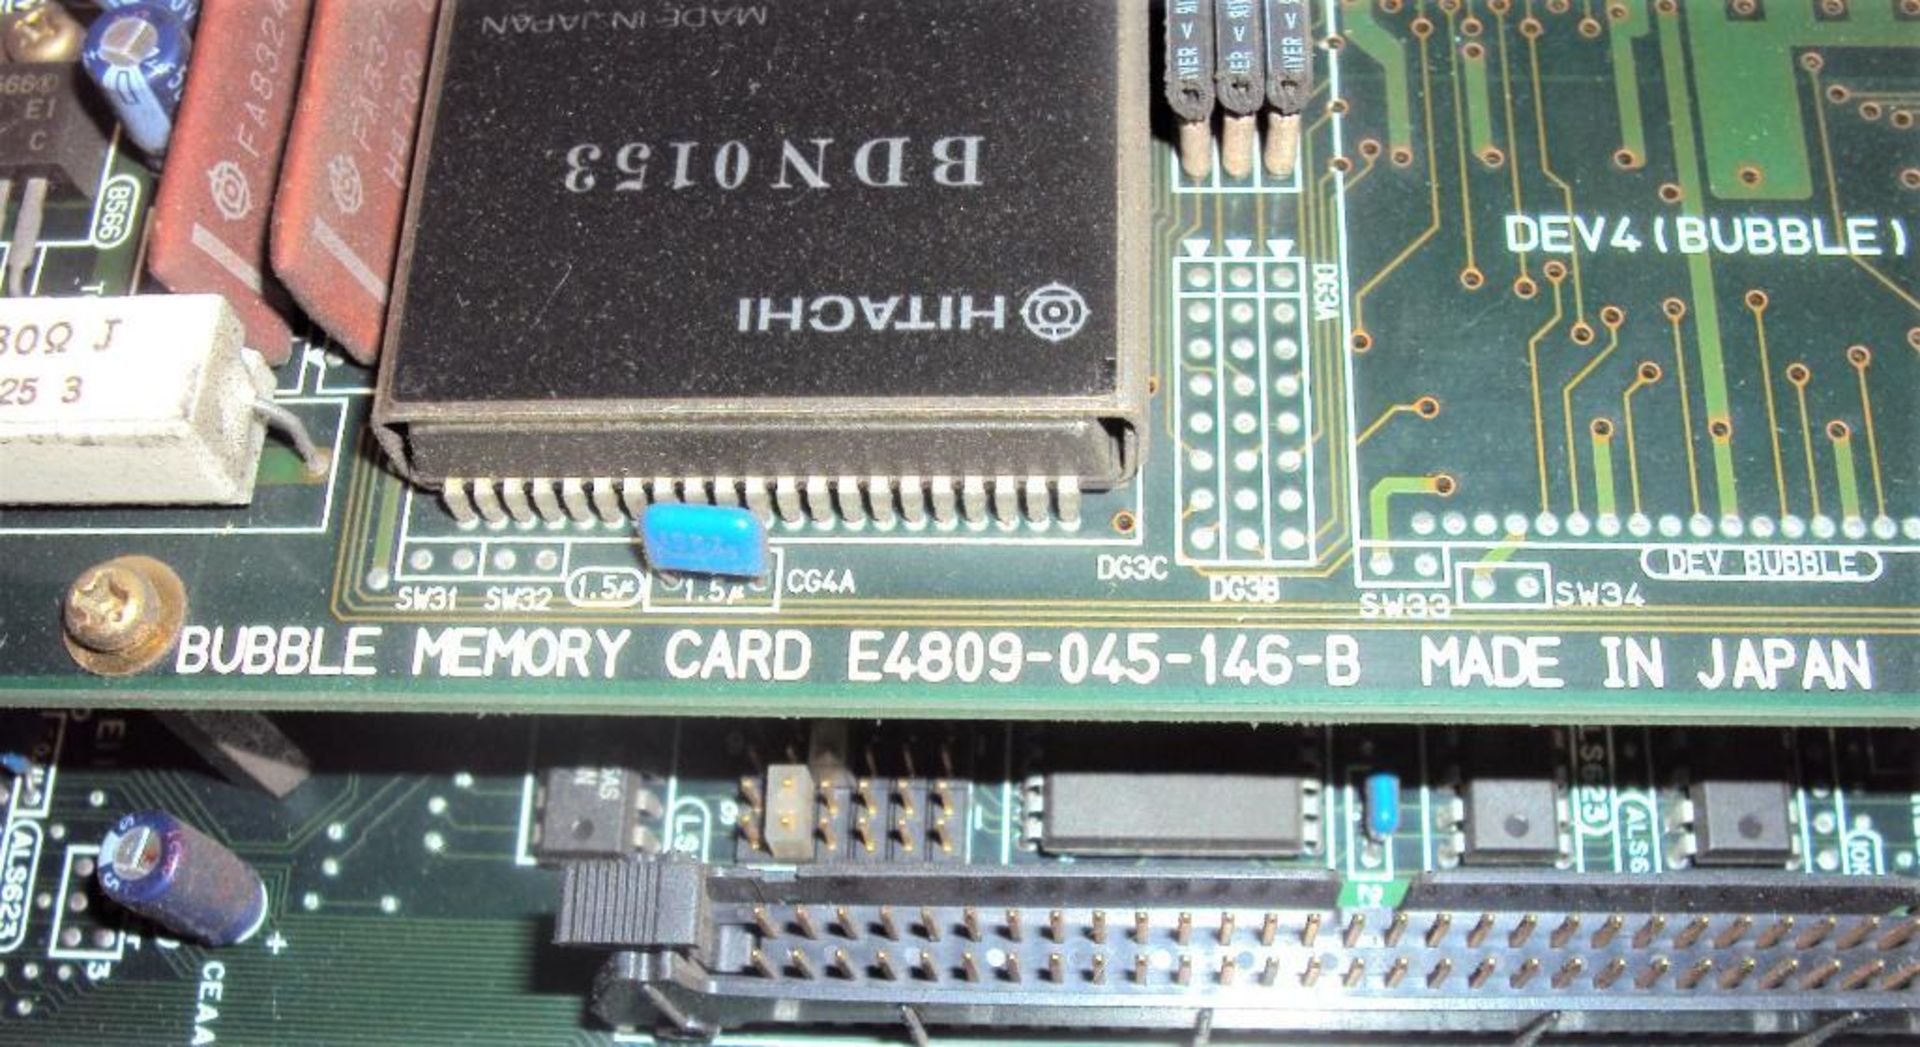 Okuma Opus 5000II E4809-045-091-E Main Board IIE w/ E4809-045-146-B Bubble Memory Card & E4809-045-1 - Image 5 of 8